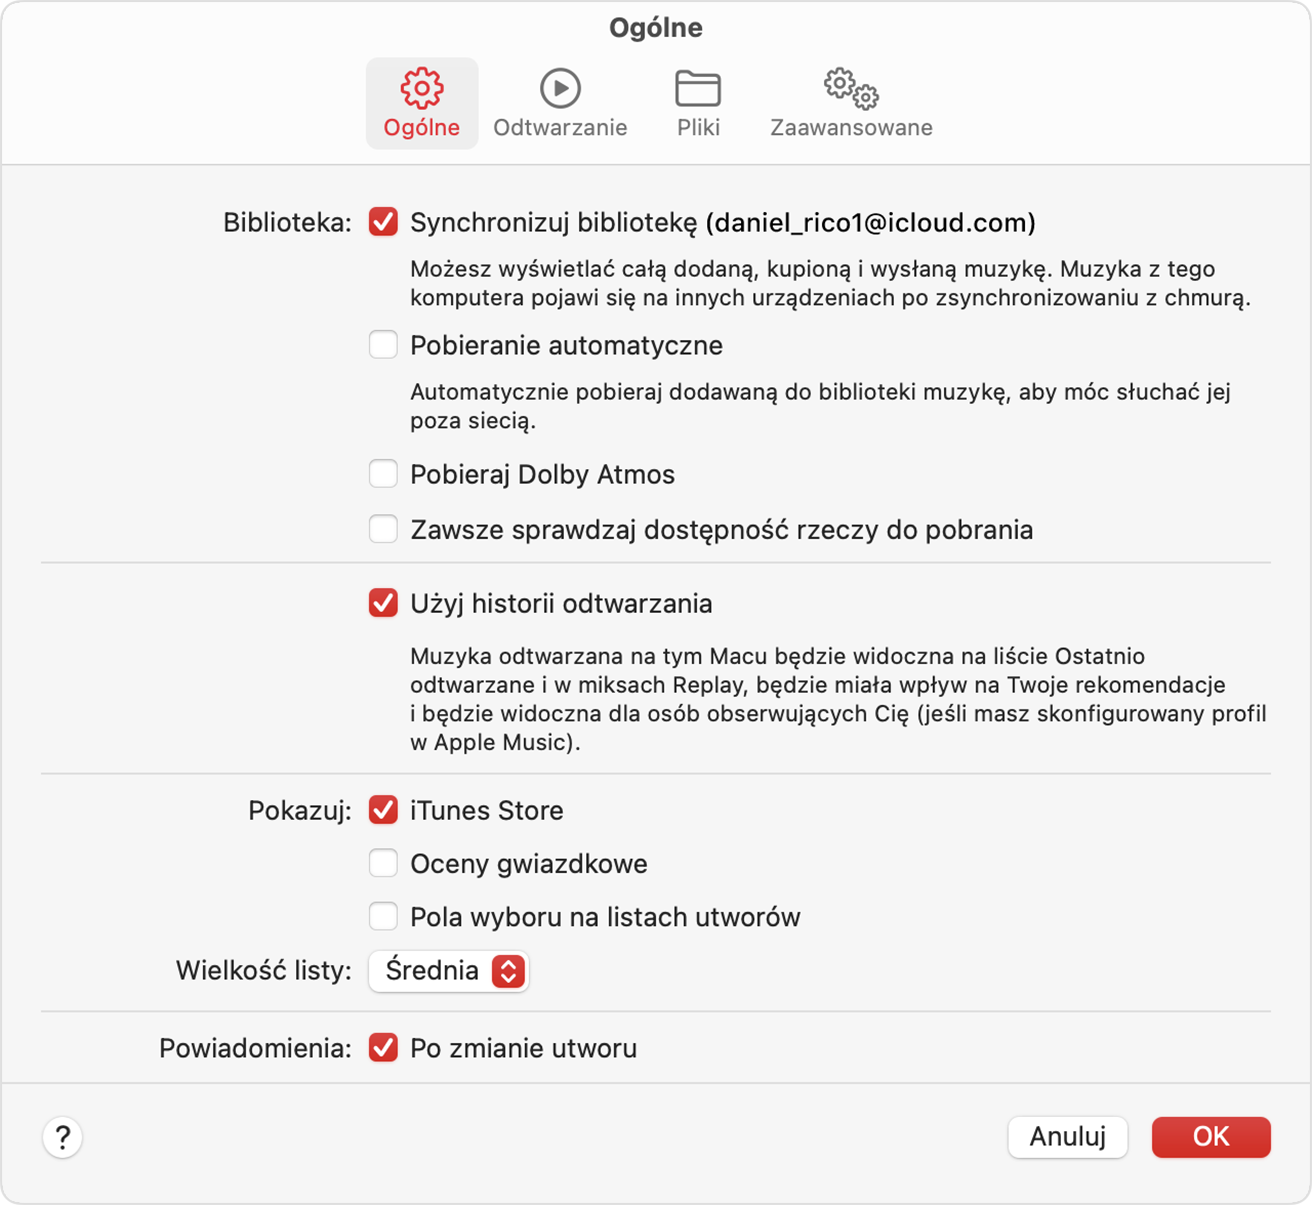 Okno ustawień aplikacji Apple Music z wybranym sklepem iTunes Store